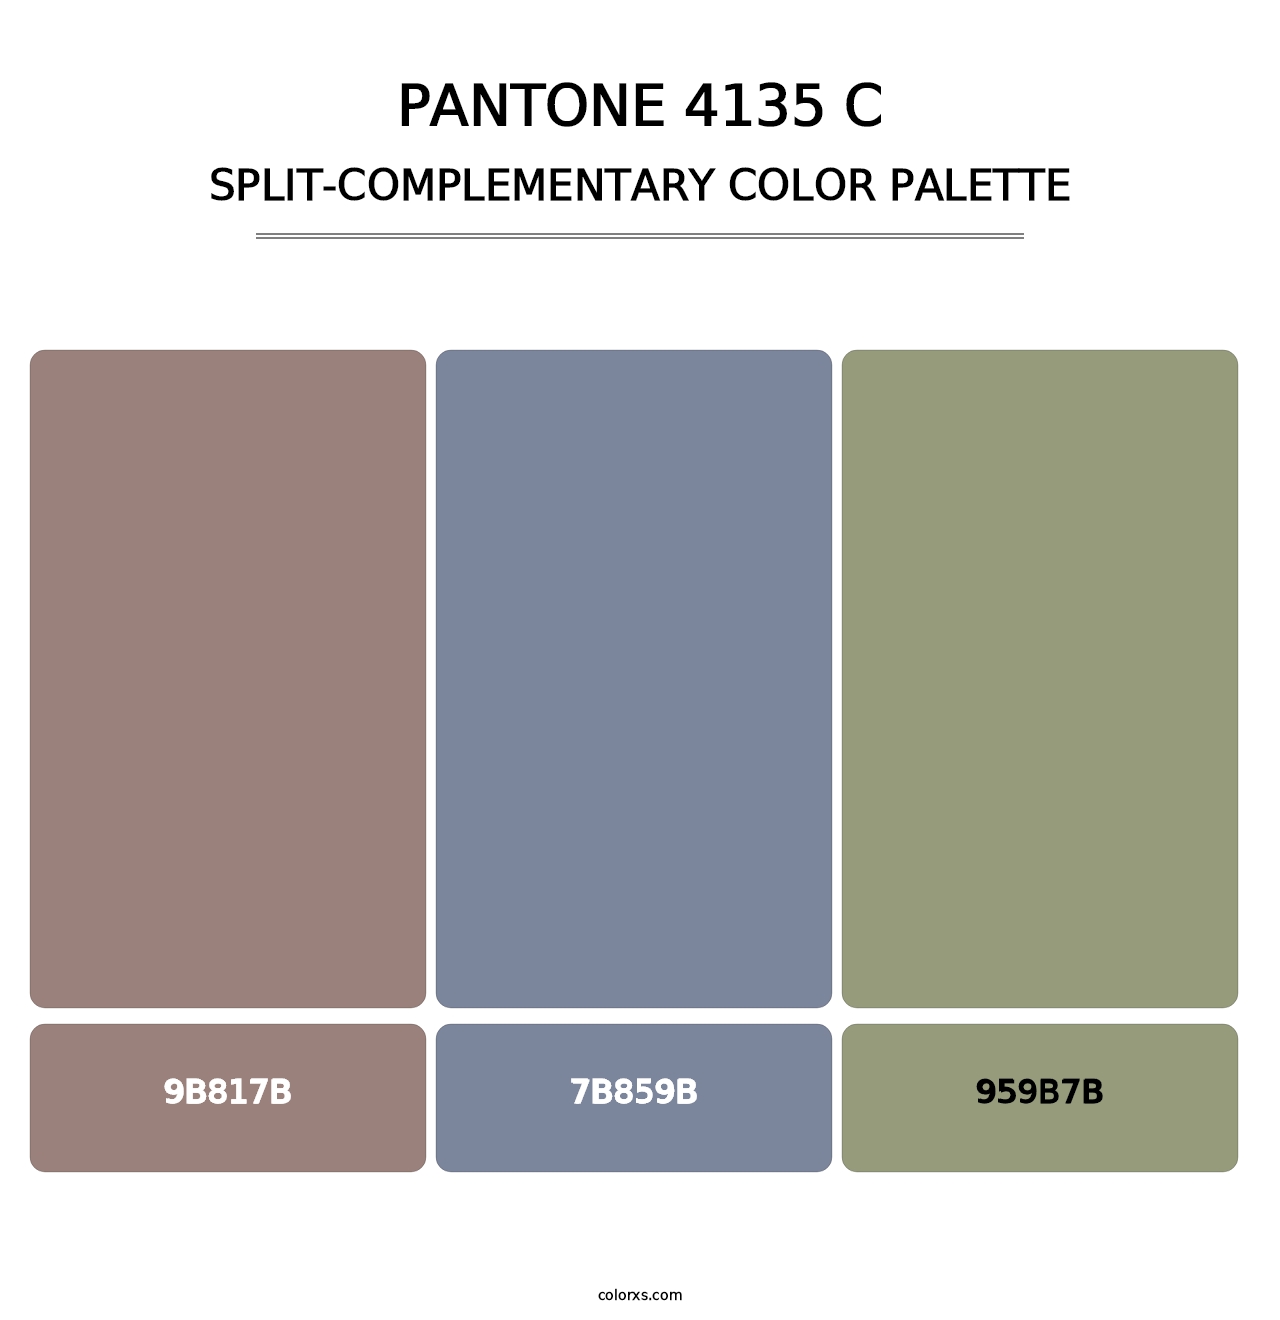 PANTONE 4135 C - Split-Complementary Color Palette